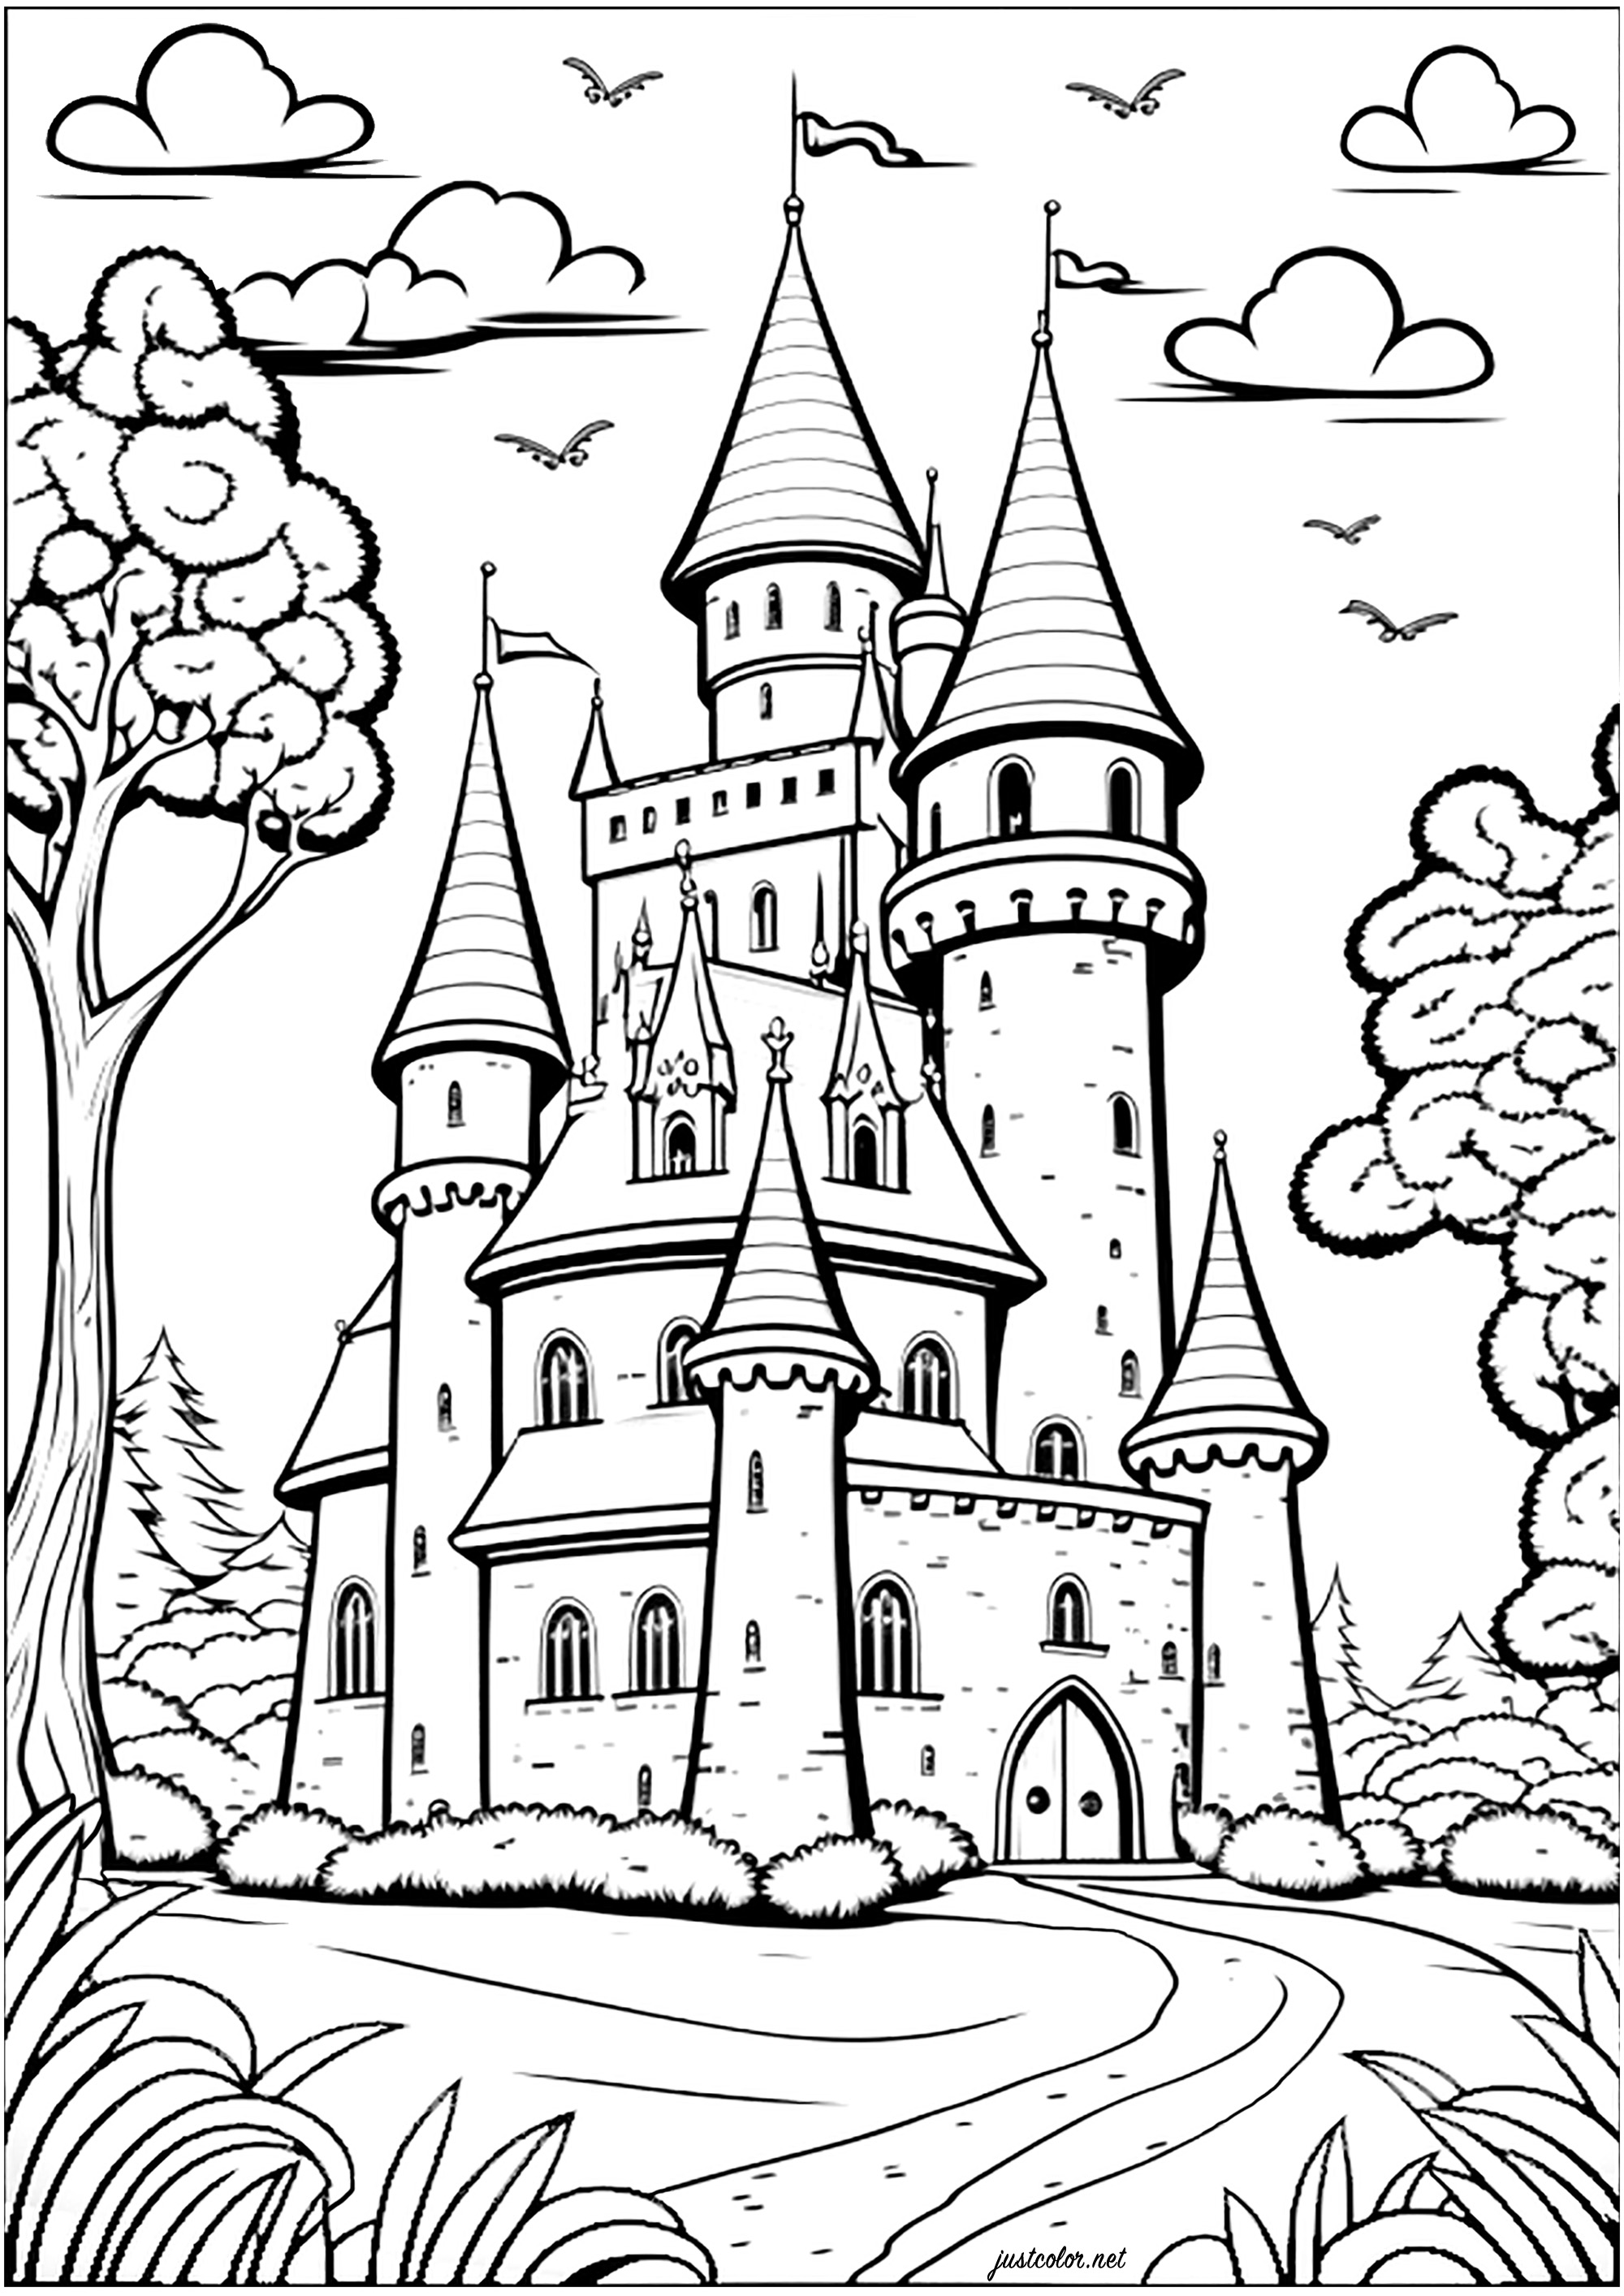 Coloração de um castelo num reino imaginário. Colorir todos os seus torreões, janelas, portas e muros para um momento encantado!